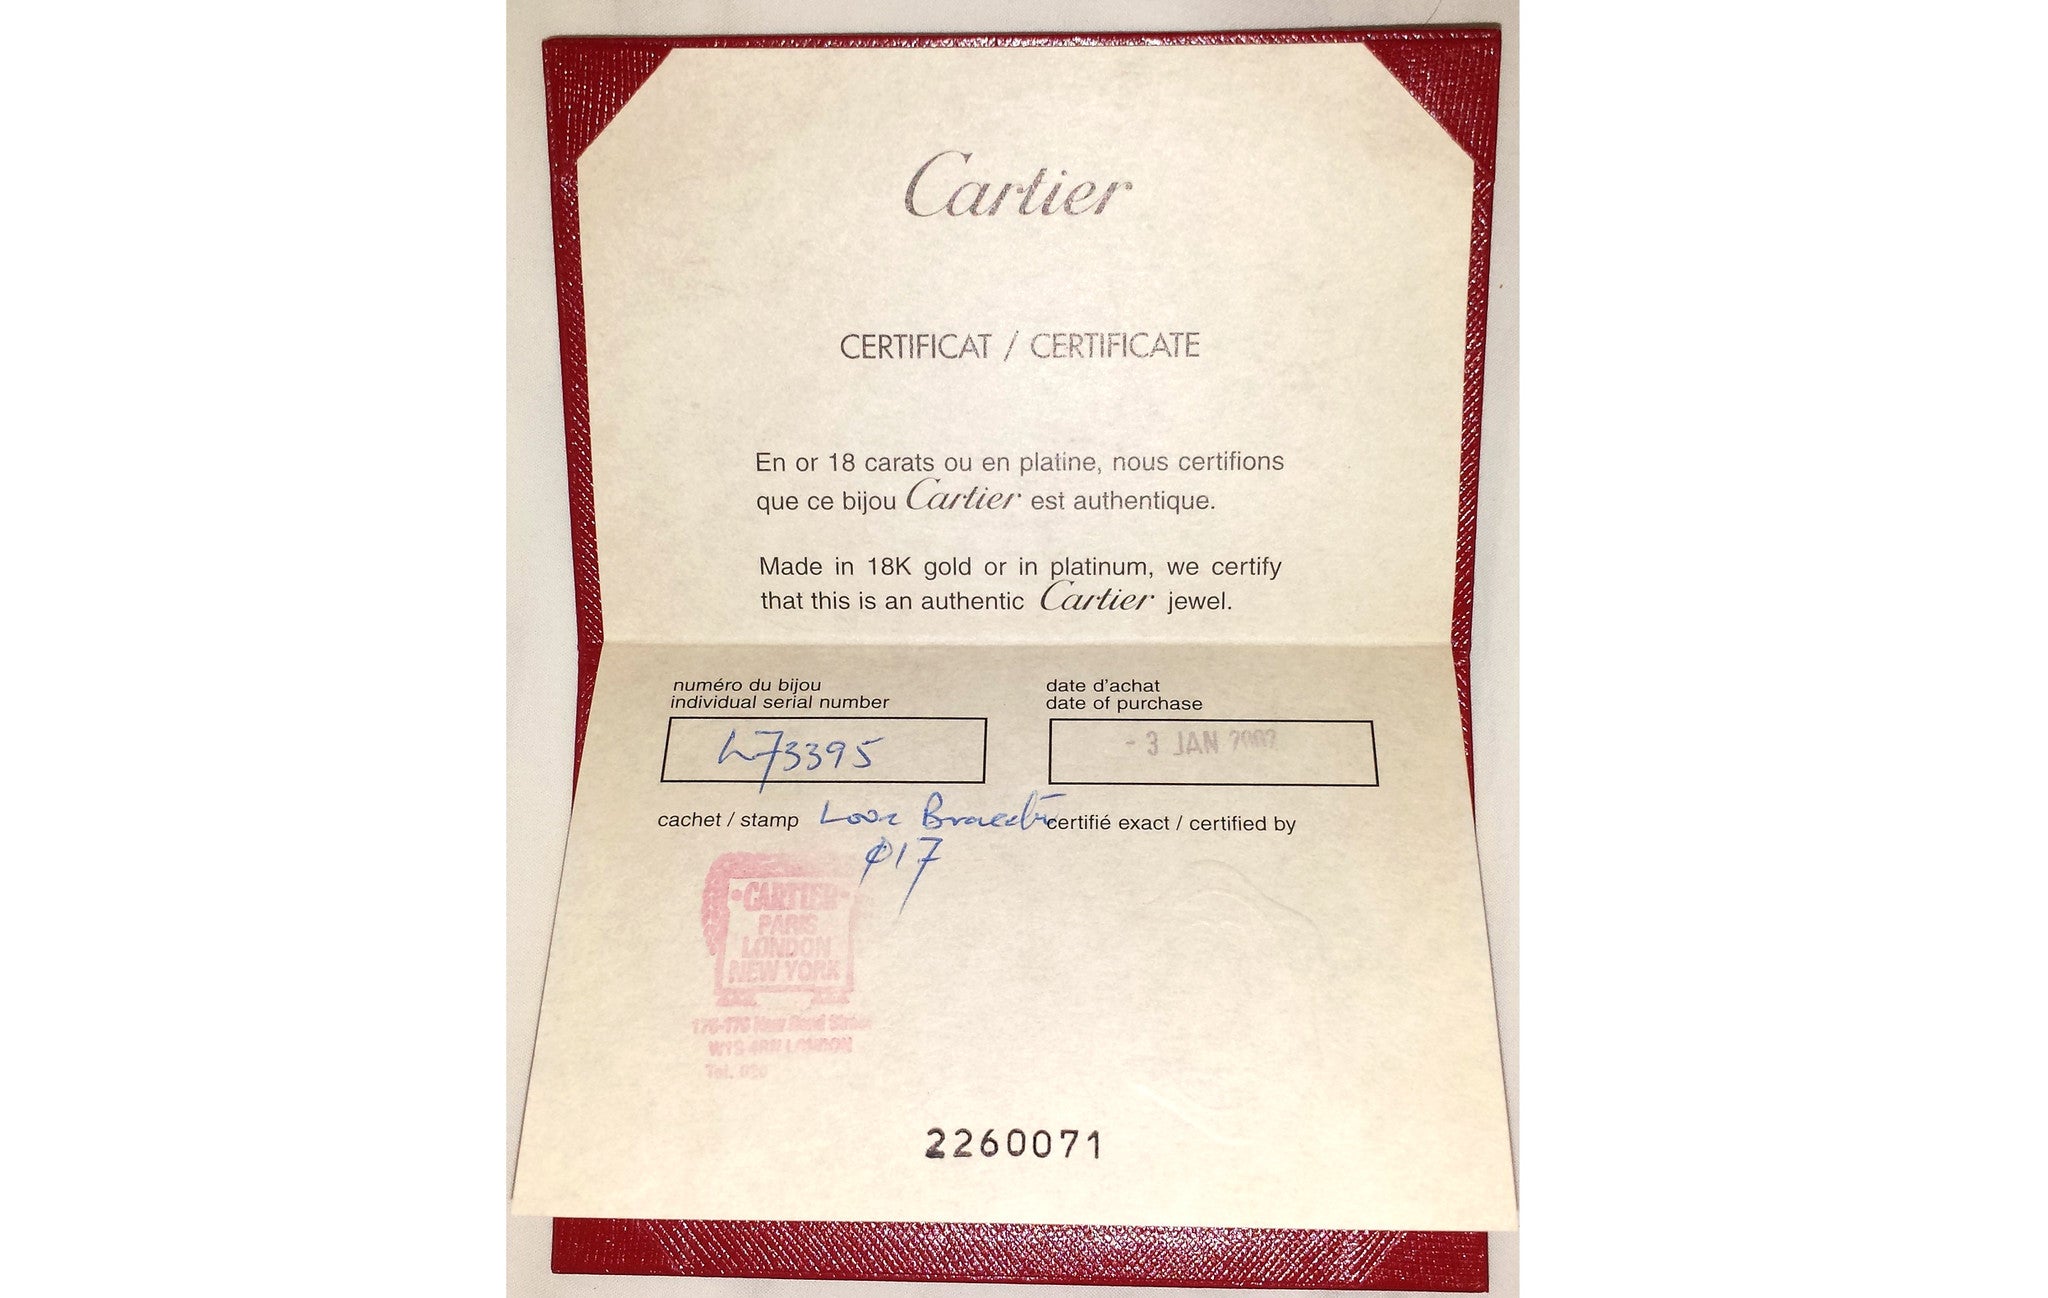 cartier certificate number